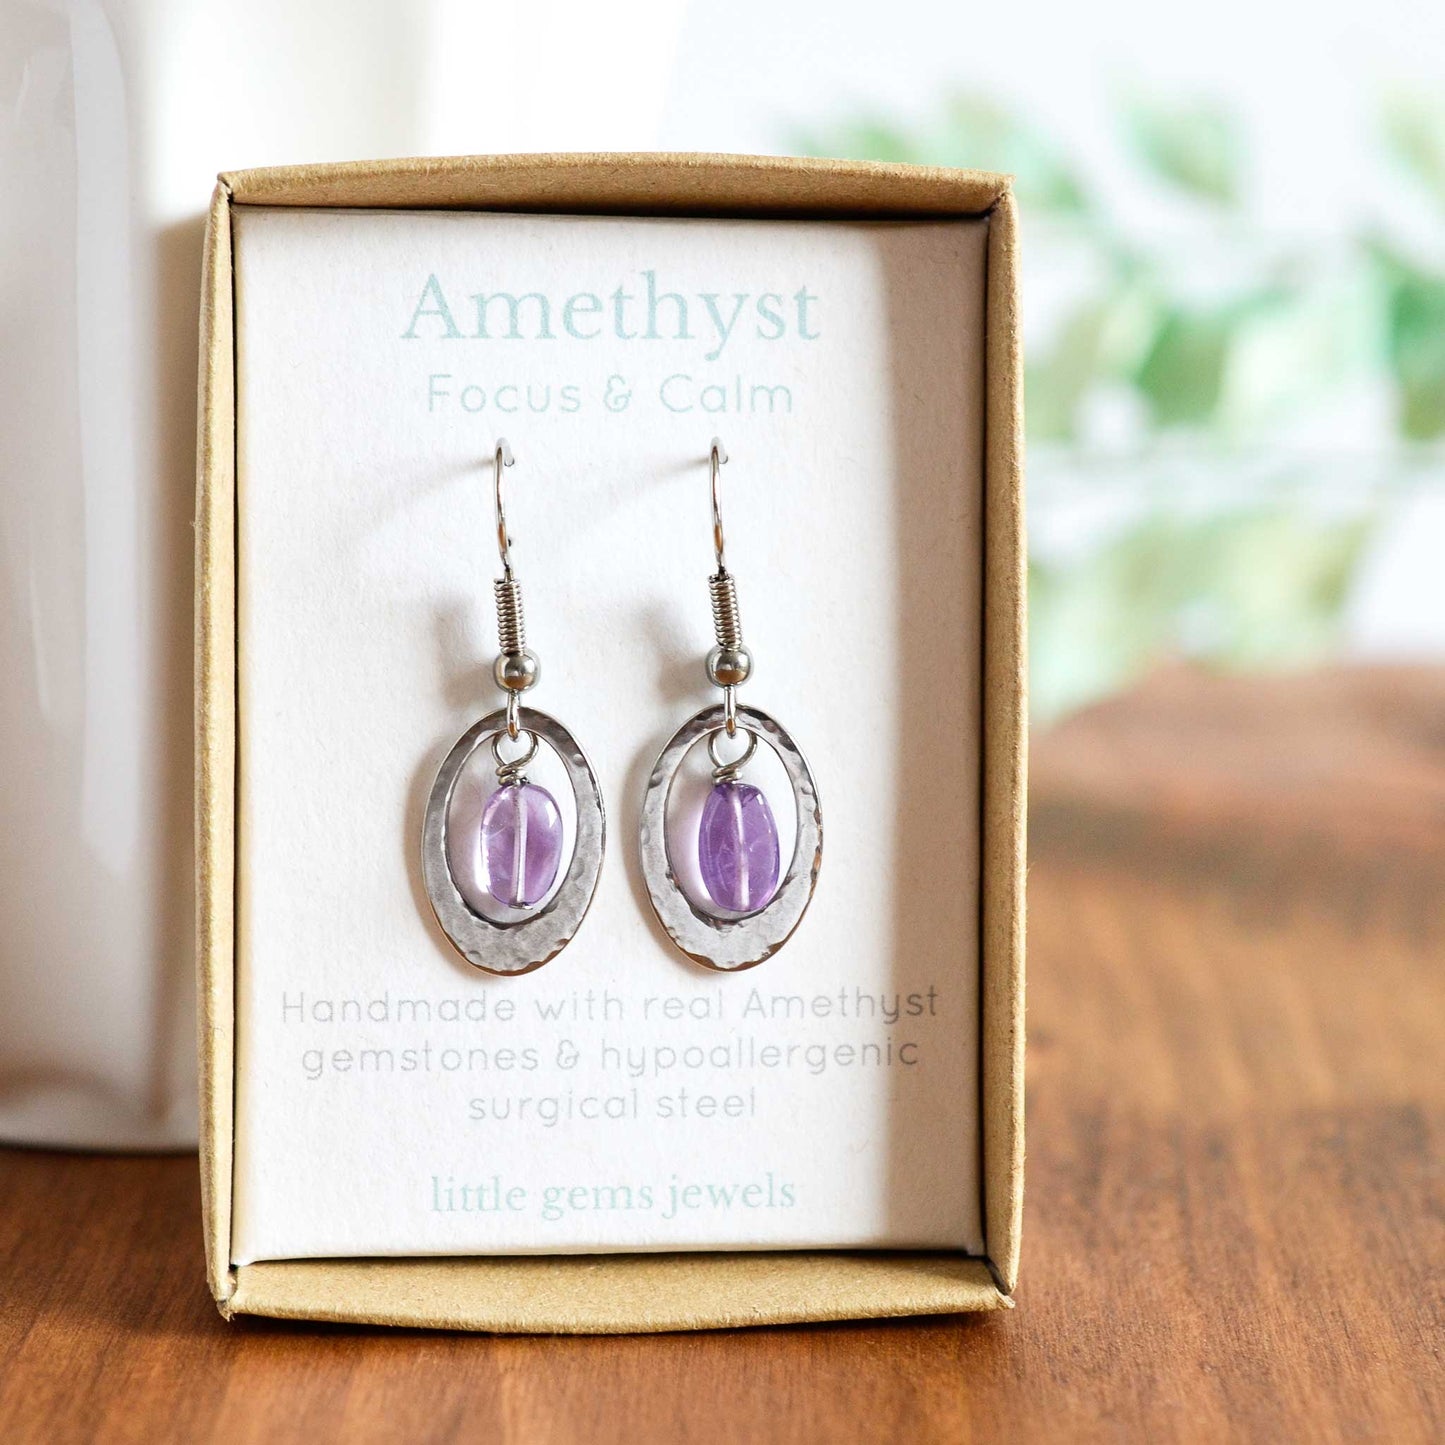 Amethyst drop earrings in gift box